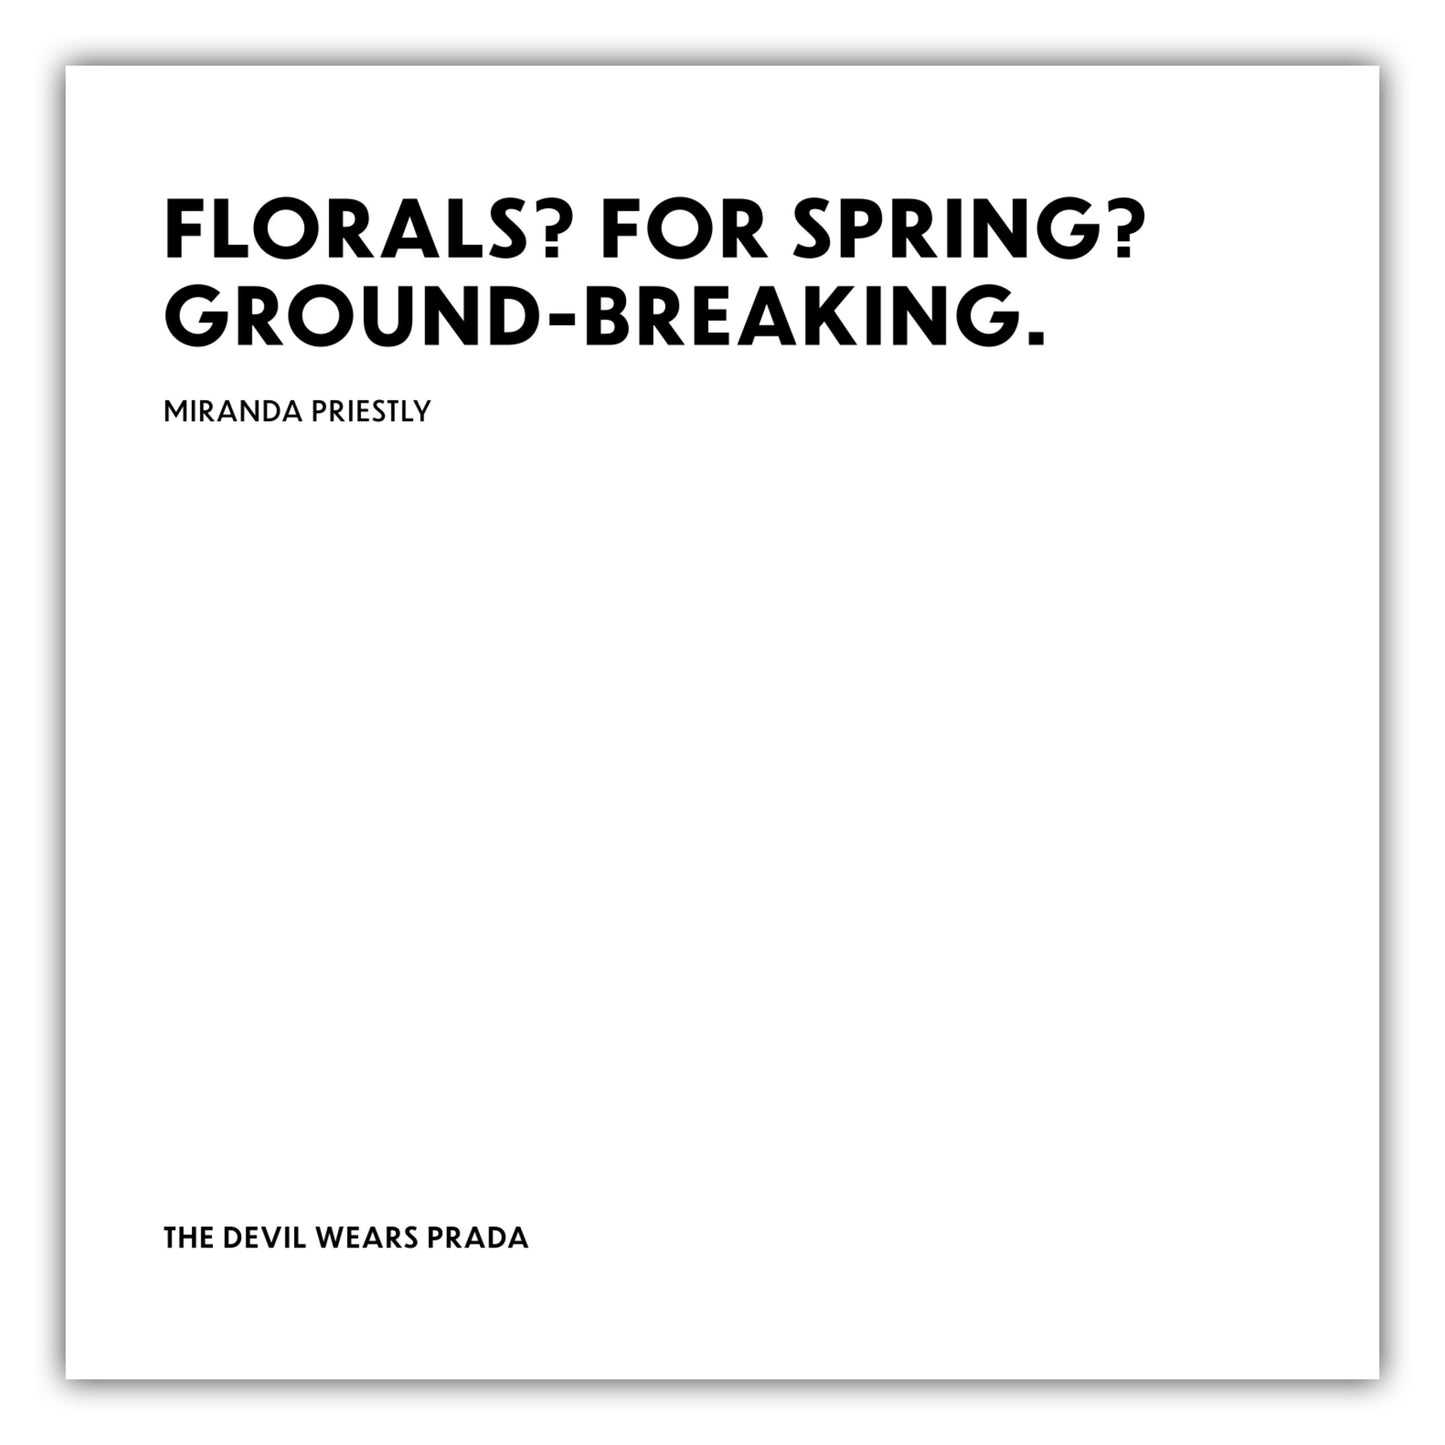 Poster Florals? For spring? Ground-breaking. - Miranda Priestly - The Devil Wears Prada (Der Teufel trägt Prada)